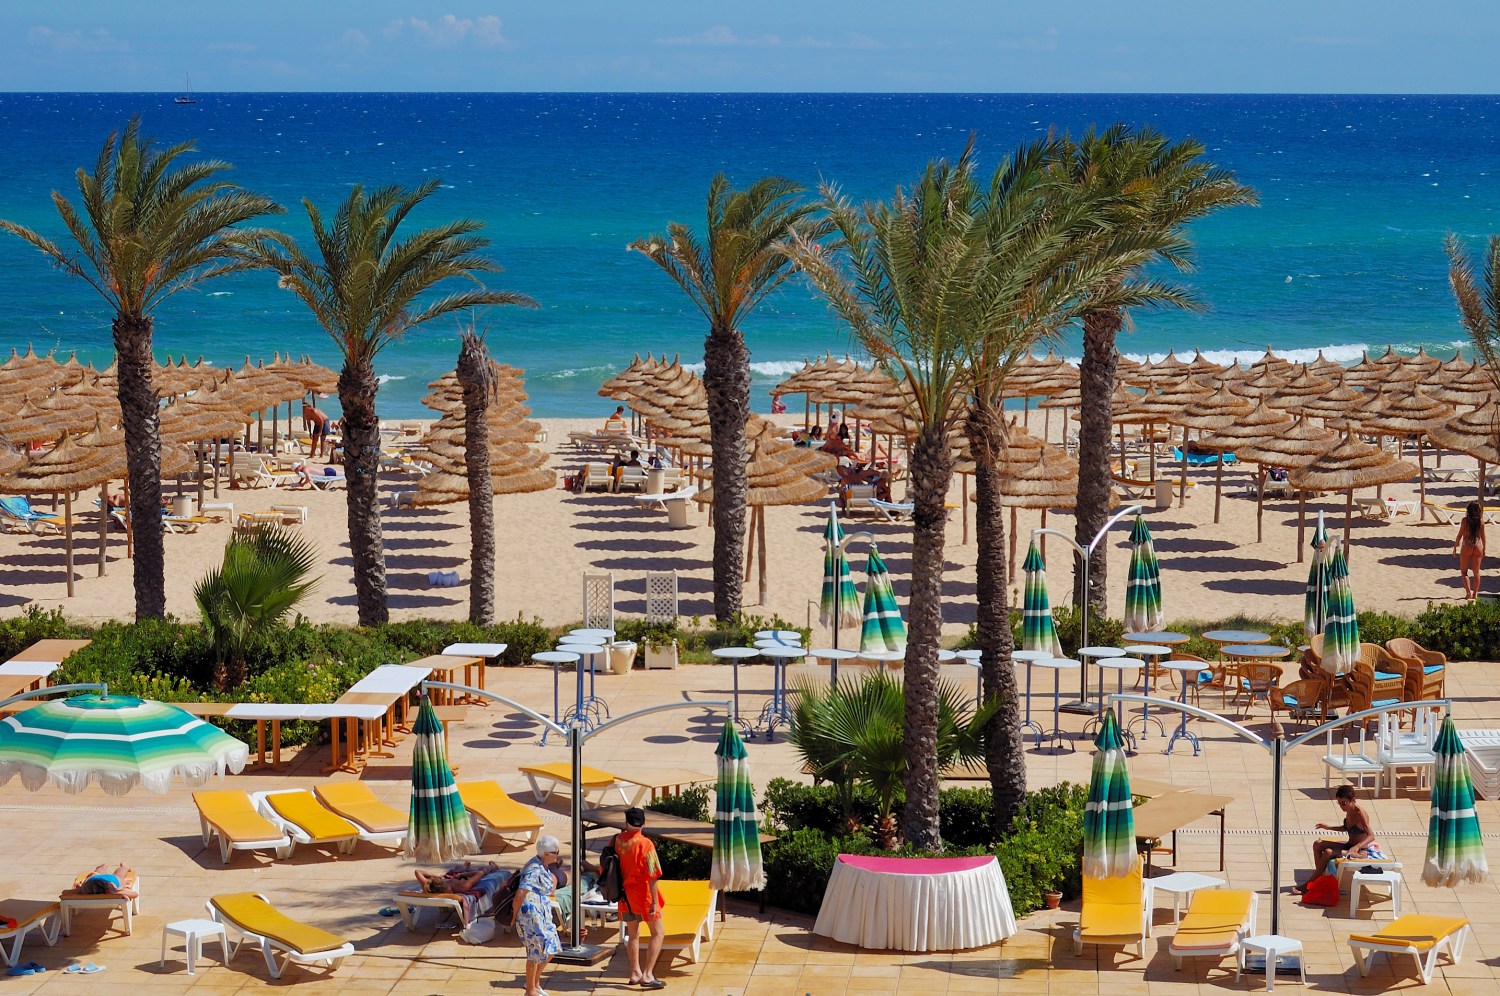 Beach in Tunisia